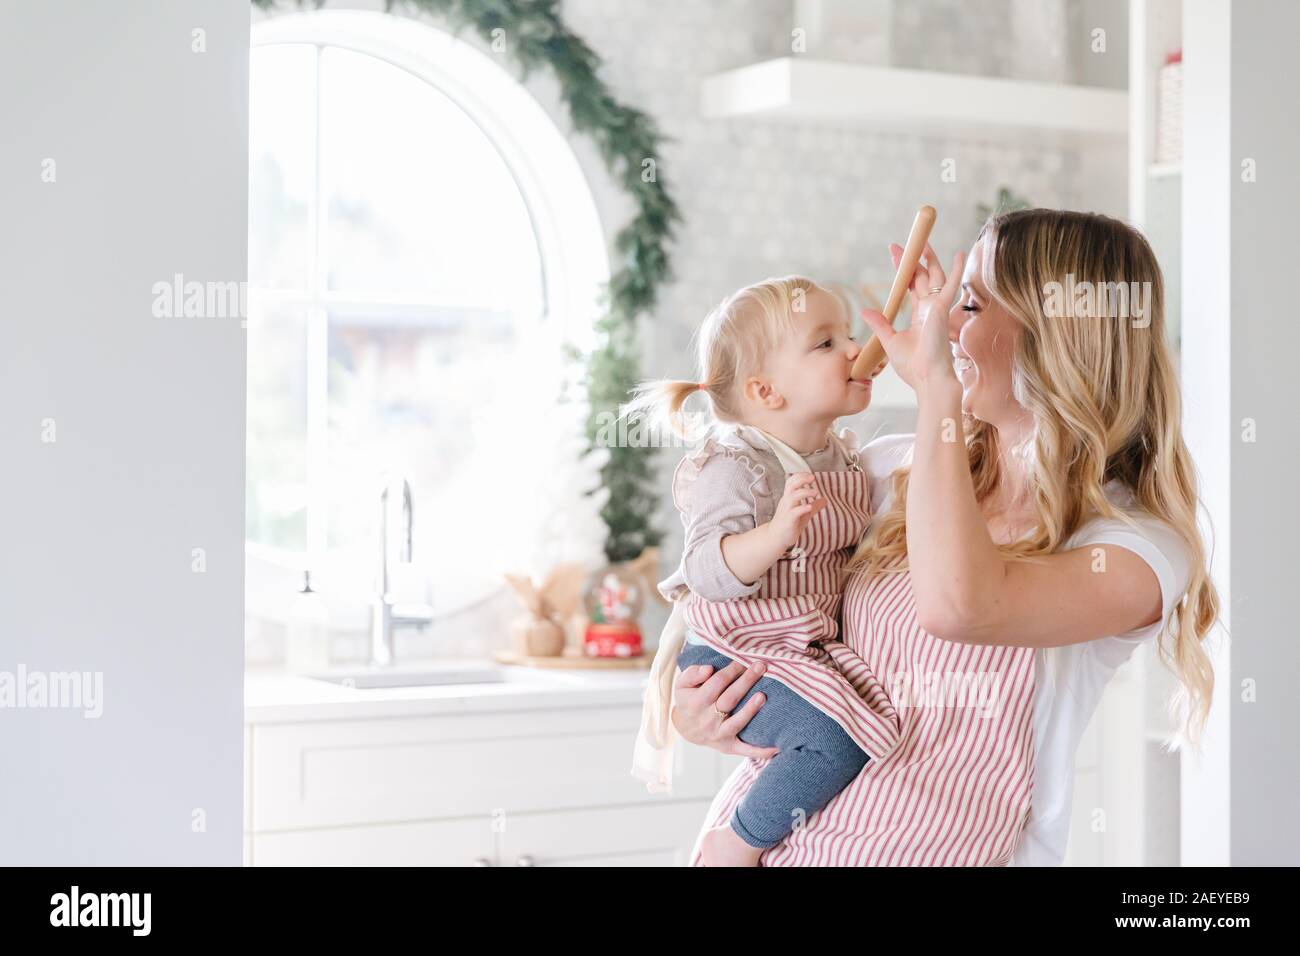 Mutter Holding baby Tochter in passenden Schürzen backen in der Küche Stockfoto